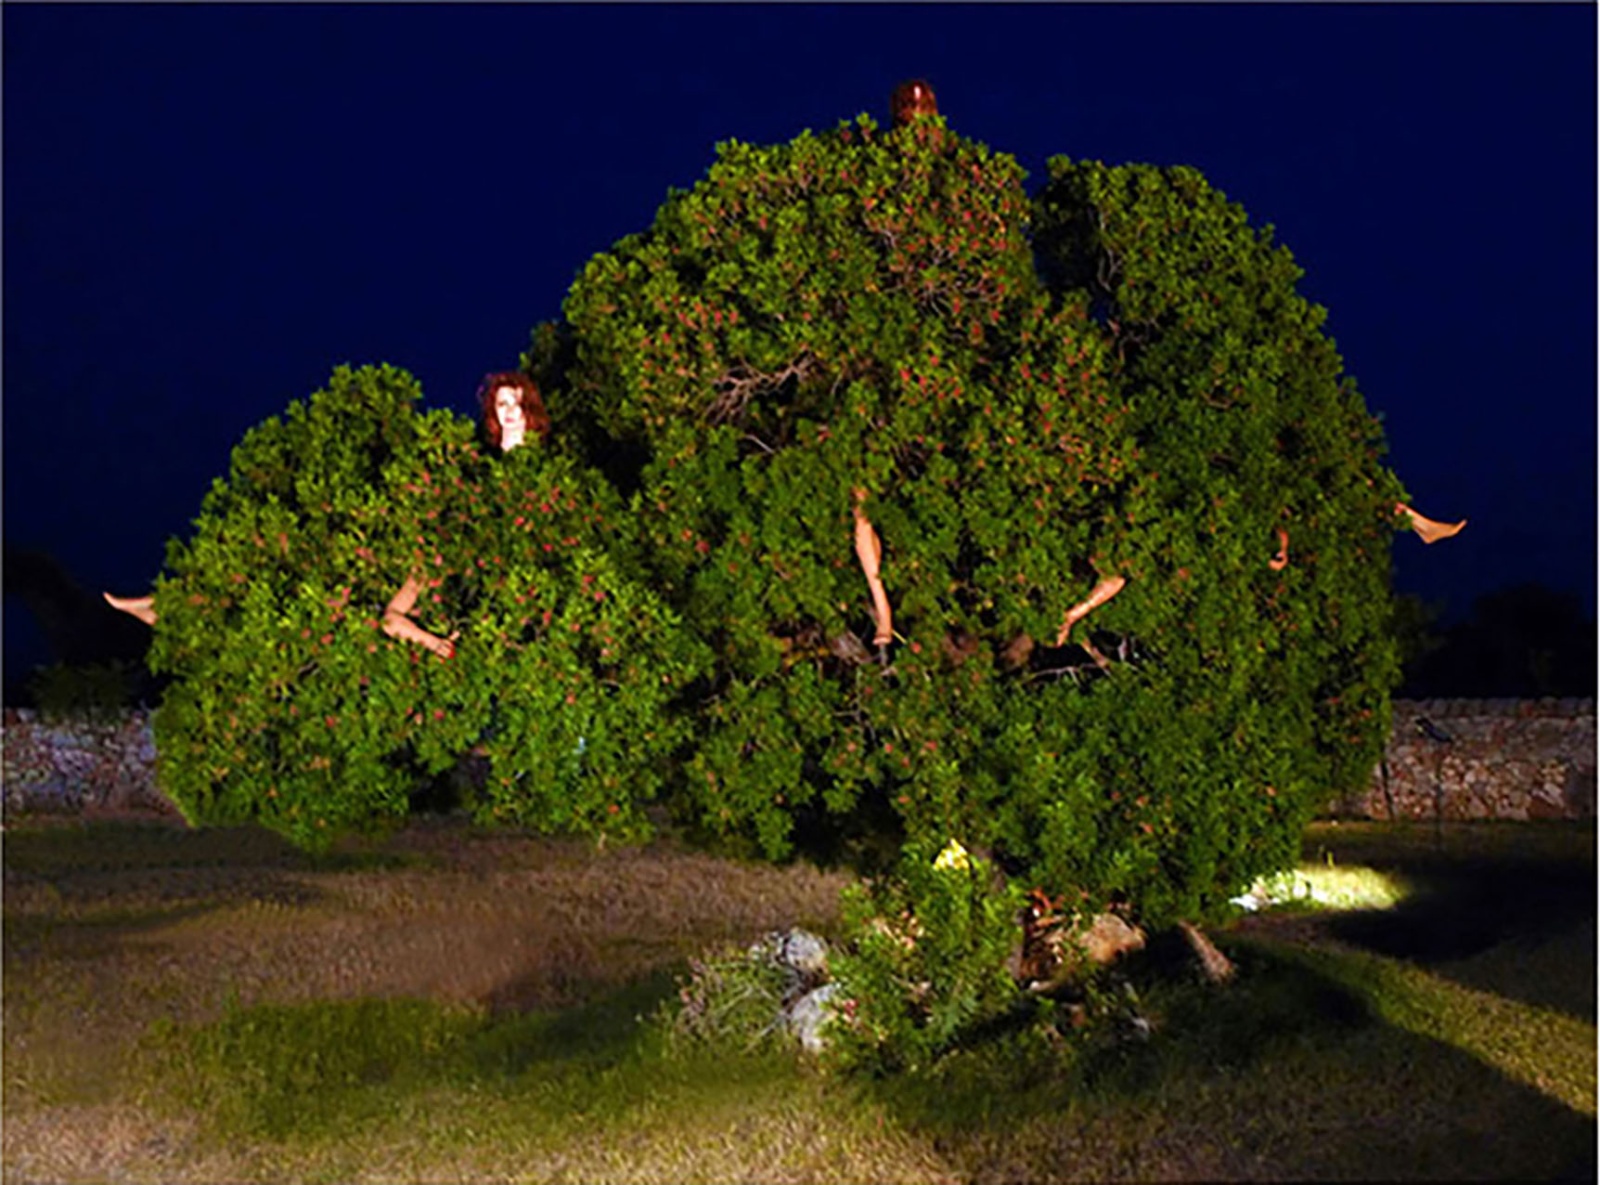 ALBERO ABITATO . 2010 - Installazione con albero e manichini
Masseria Boezio (Ostuni), estate 2010